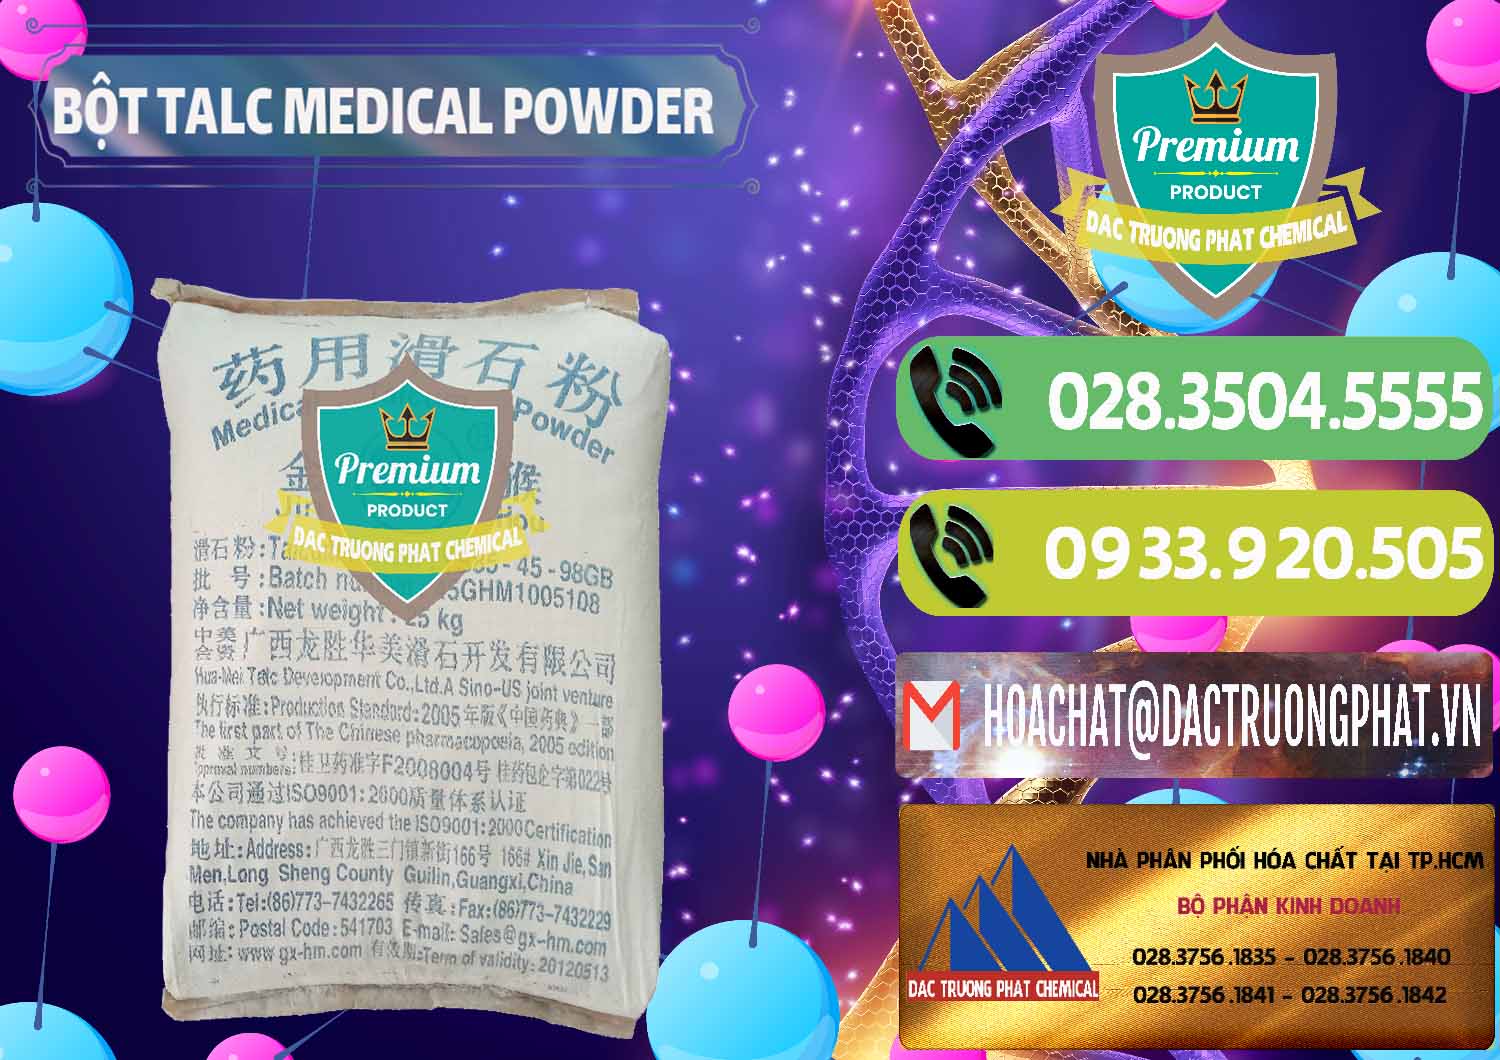 Đơn vị bán và cung cấp Bột Talc Medical Powder Trung Quốc China - 0036 - Cty cung ứng - phân phối hóa chất tại TP.HCM - hoachatmientay.vn